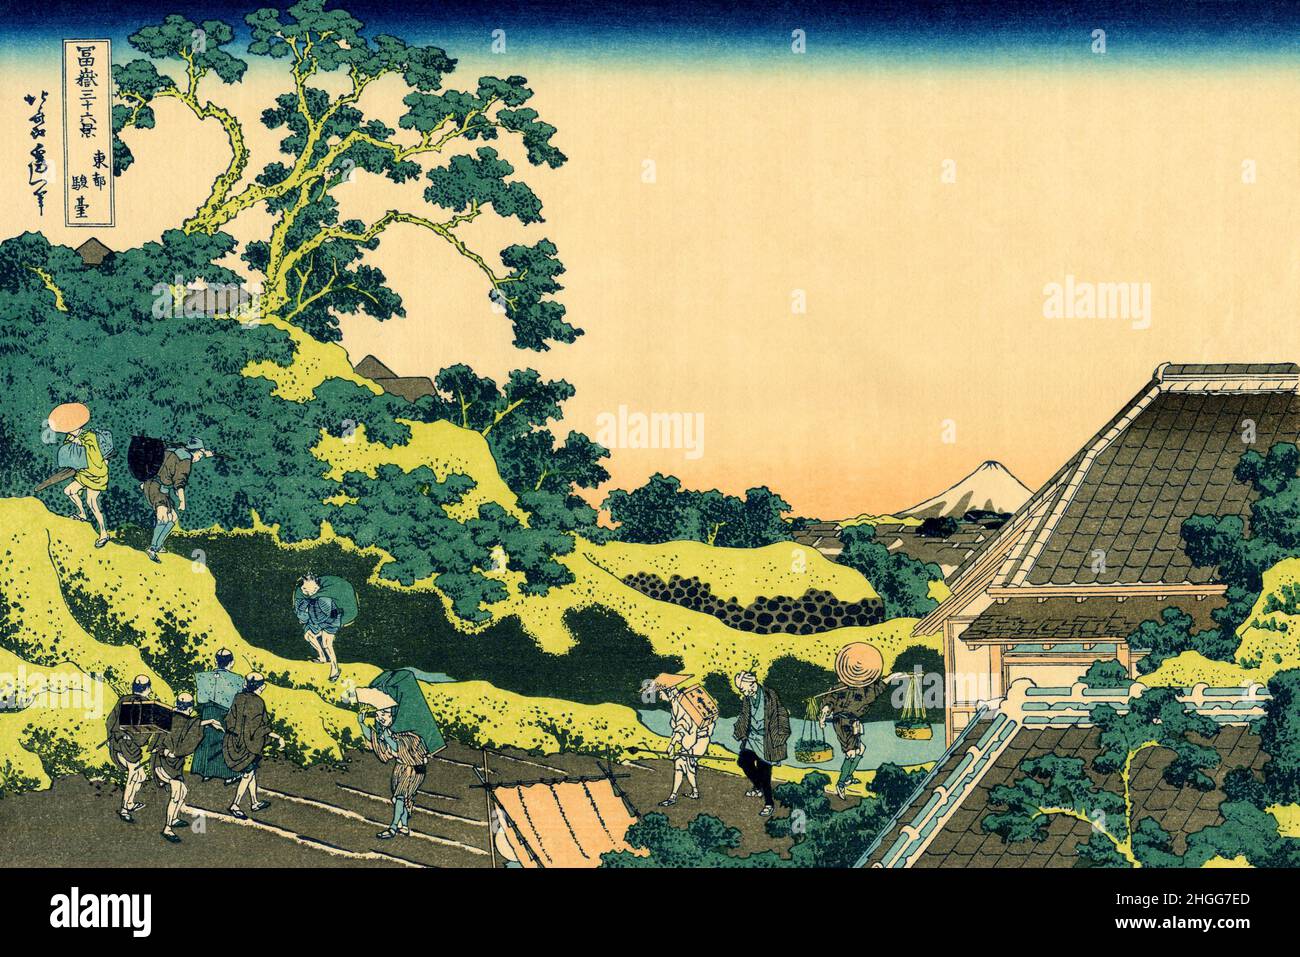 Japon: ‘Jundí, Edo’, également connu sous le nom de ‘Fuji vu du col de Mishima’.Impression de blocs de bois Ukiyo-e de la série 'trente-six vues du Mont Fuji' par Katsushika Hokusai (31 octobre 1760 - 10 mai 1849), c.1830. Le Mont Fuji est la plus haute montagne du Japon à 3,776.24 m (12,389 pi).Stratovolcan actif qui a éclaté pour la dernière fois en 1707–08, le Mont Fuji se trouve à environ 100 km au sud-ouest de Tokyo.Le cône exceptionnellement symétrique du Mont Fuji est un symbole et une icône bien connus du Japon et est fréquemment représenté dans l'art et les photographies.C'est l'une des « trois montagnes saintes » du Japon avec le mont Tate et le mont Haku. Banque D'Images